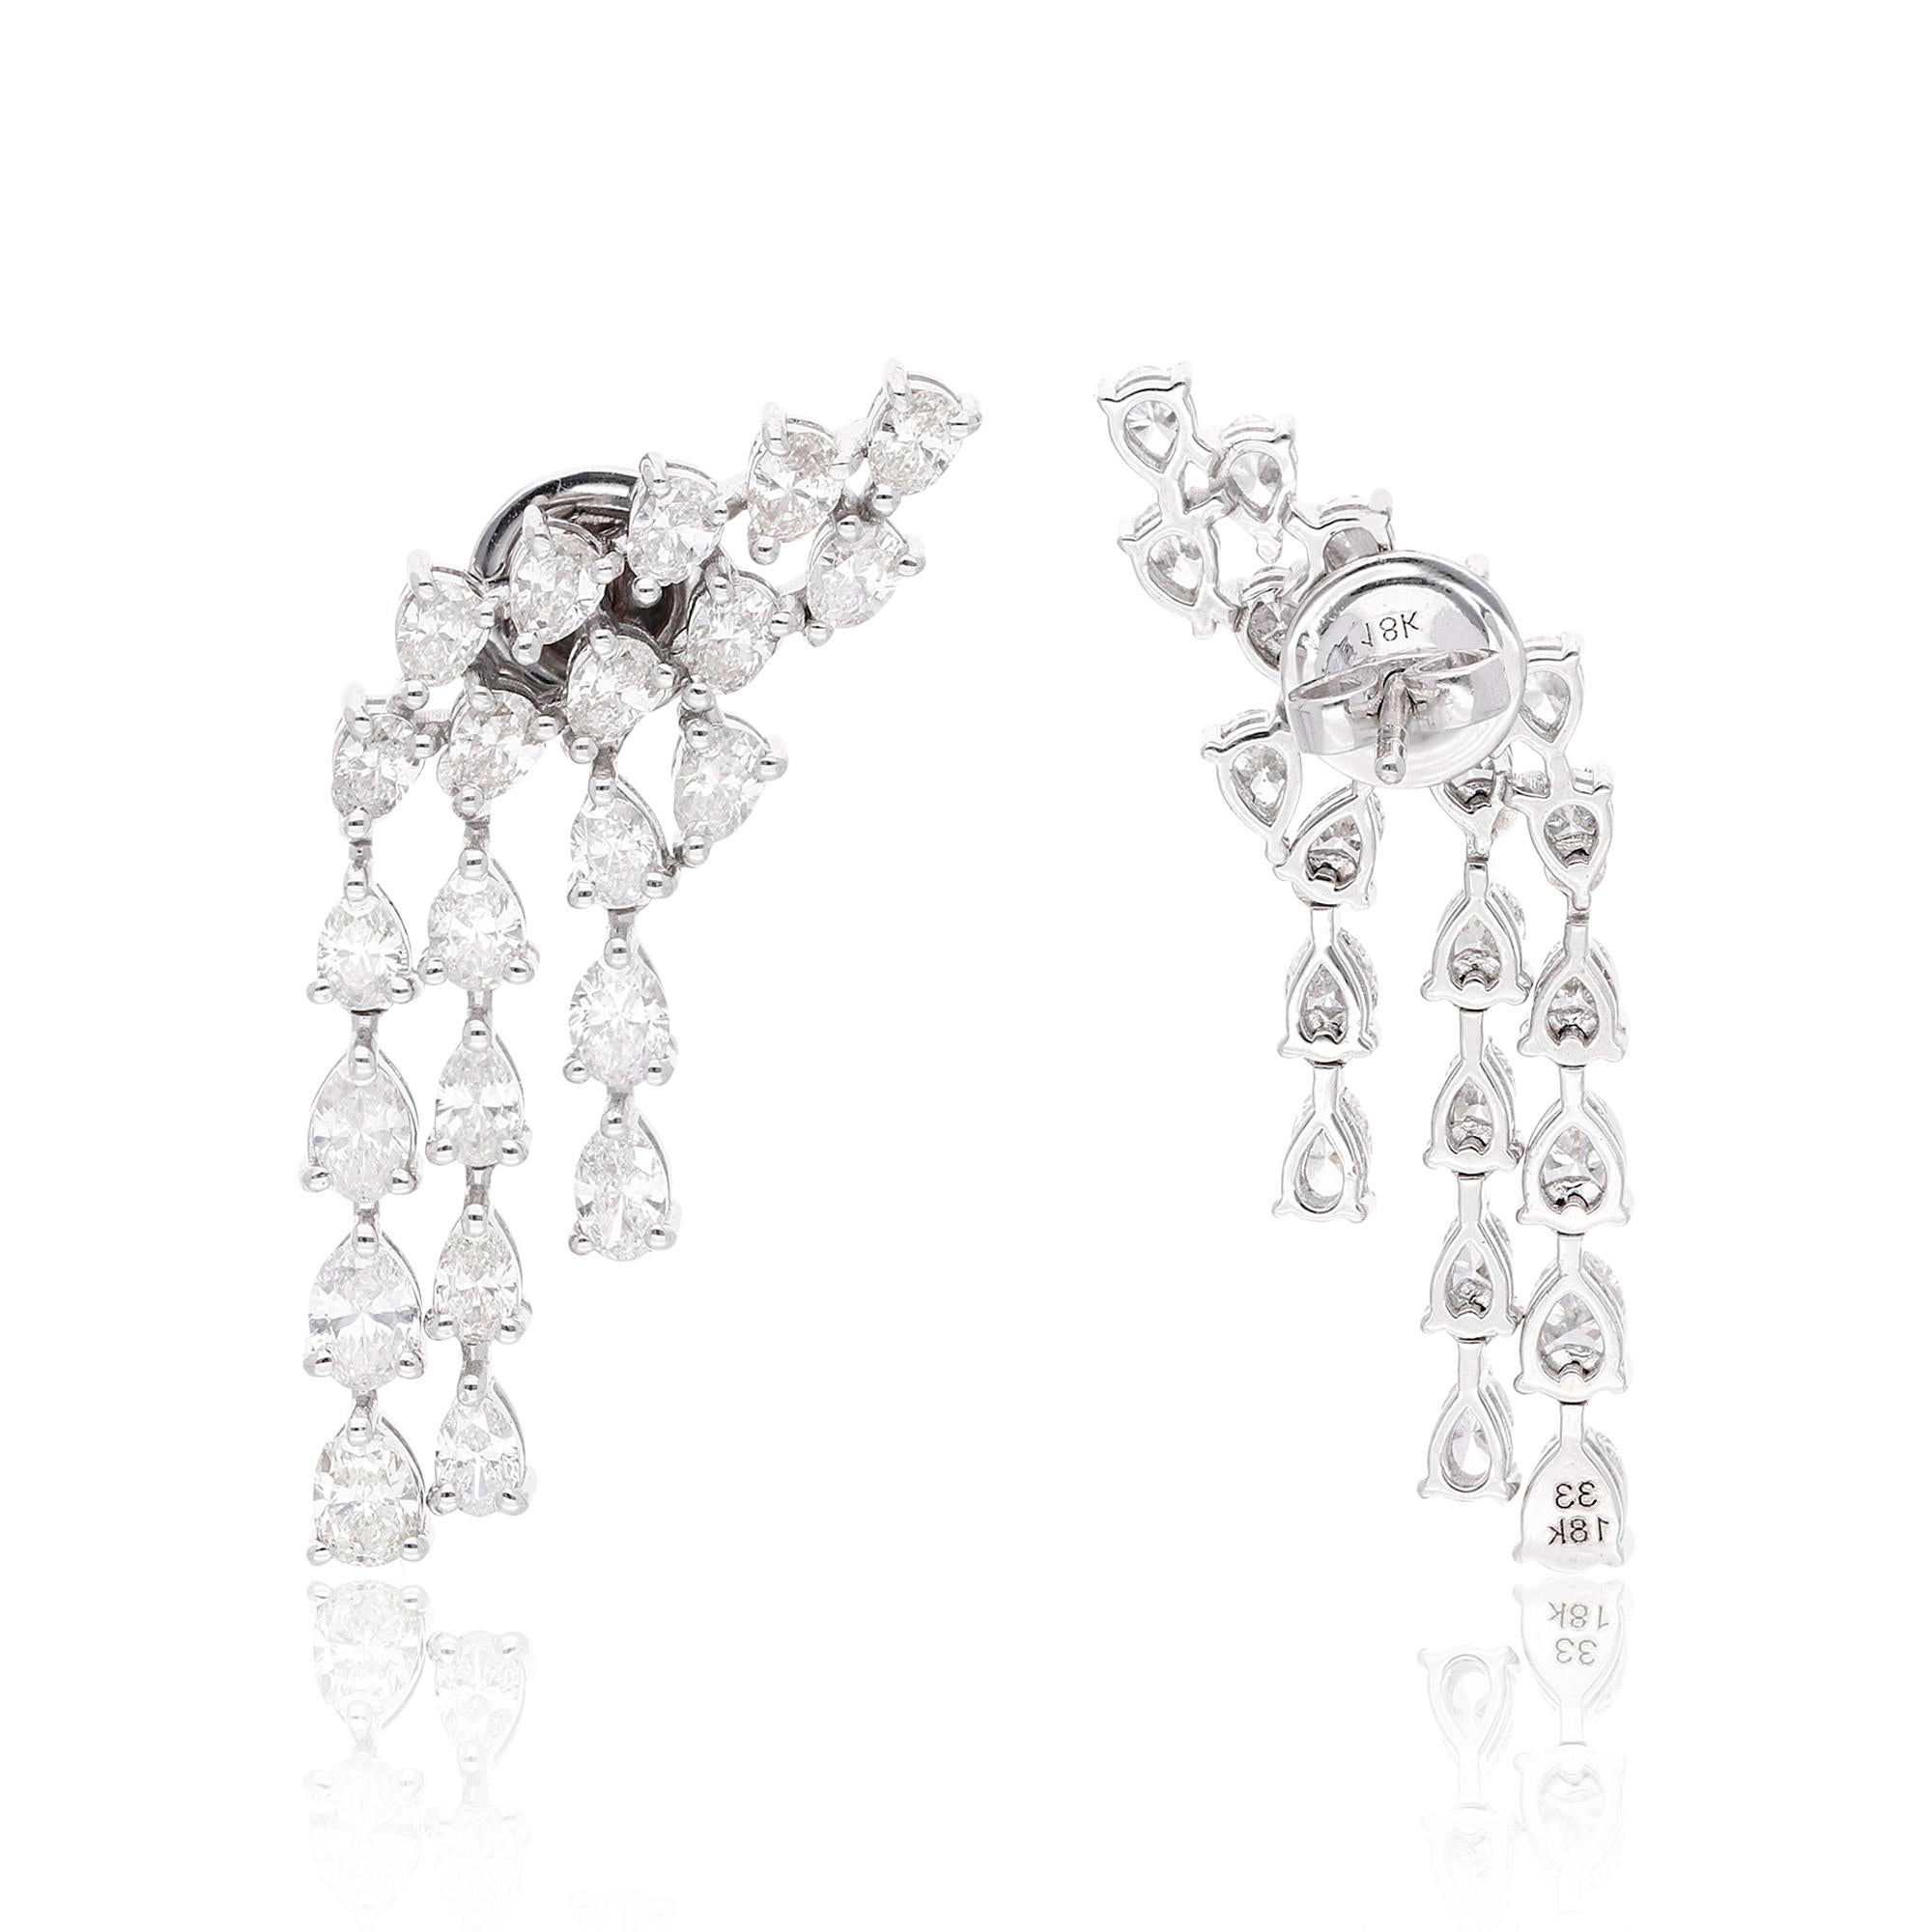 Machen Sie Ihren besonderen Tag noch magischer mit diesen exquisiten, mit Liebe handgefertigten Chandelier-Diamant-Ohrringen. Die aufwändigen Details und die fachmännische Verarbeitung sorgen dafür, dass diese Ohrringe nicht nur schön, sondern auch